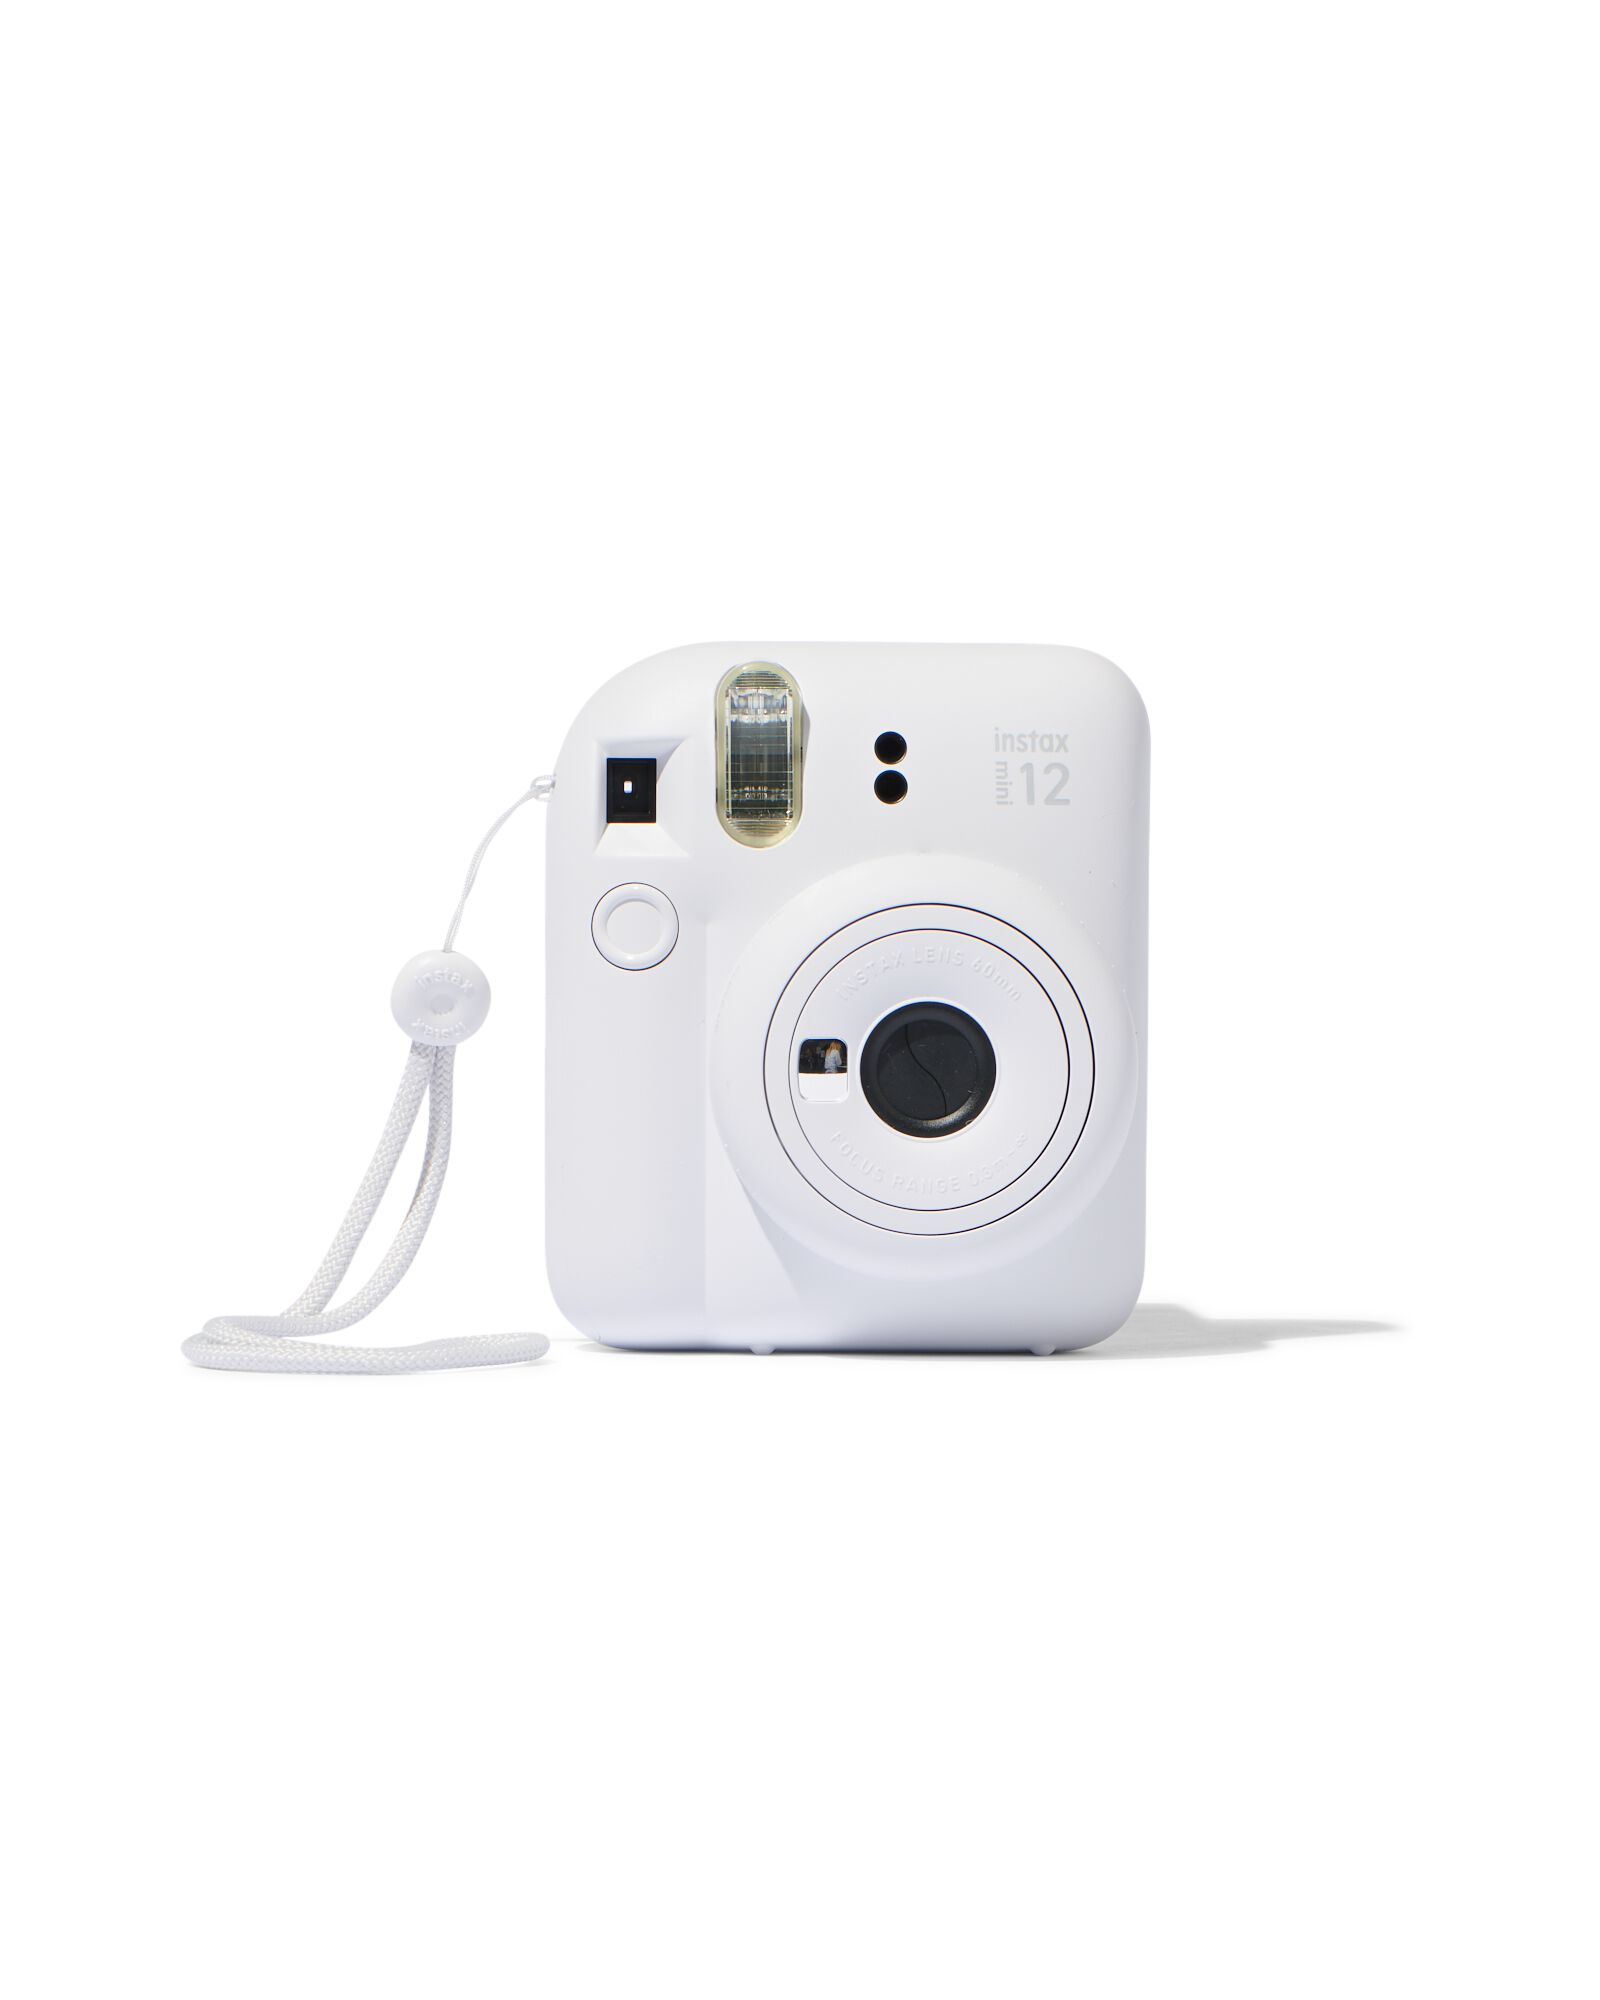 Kamera Fujifilm Instax Mini 12, weiß - HEMA